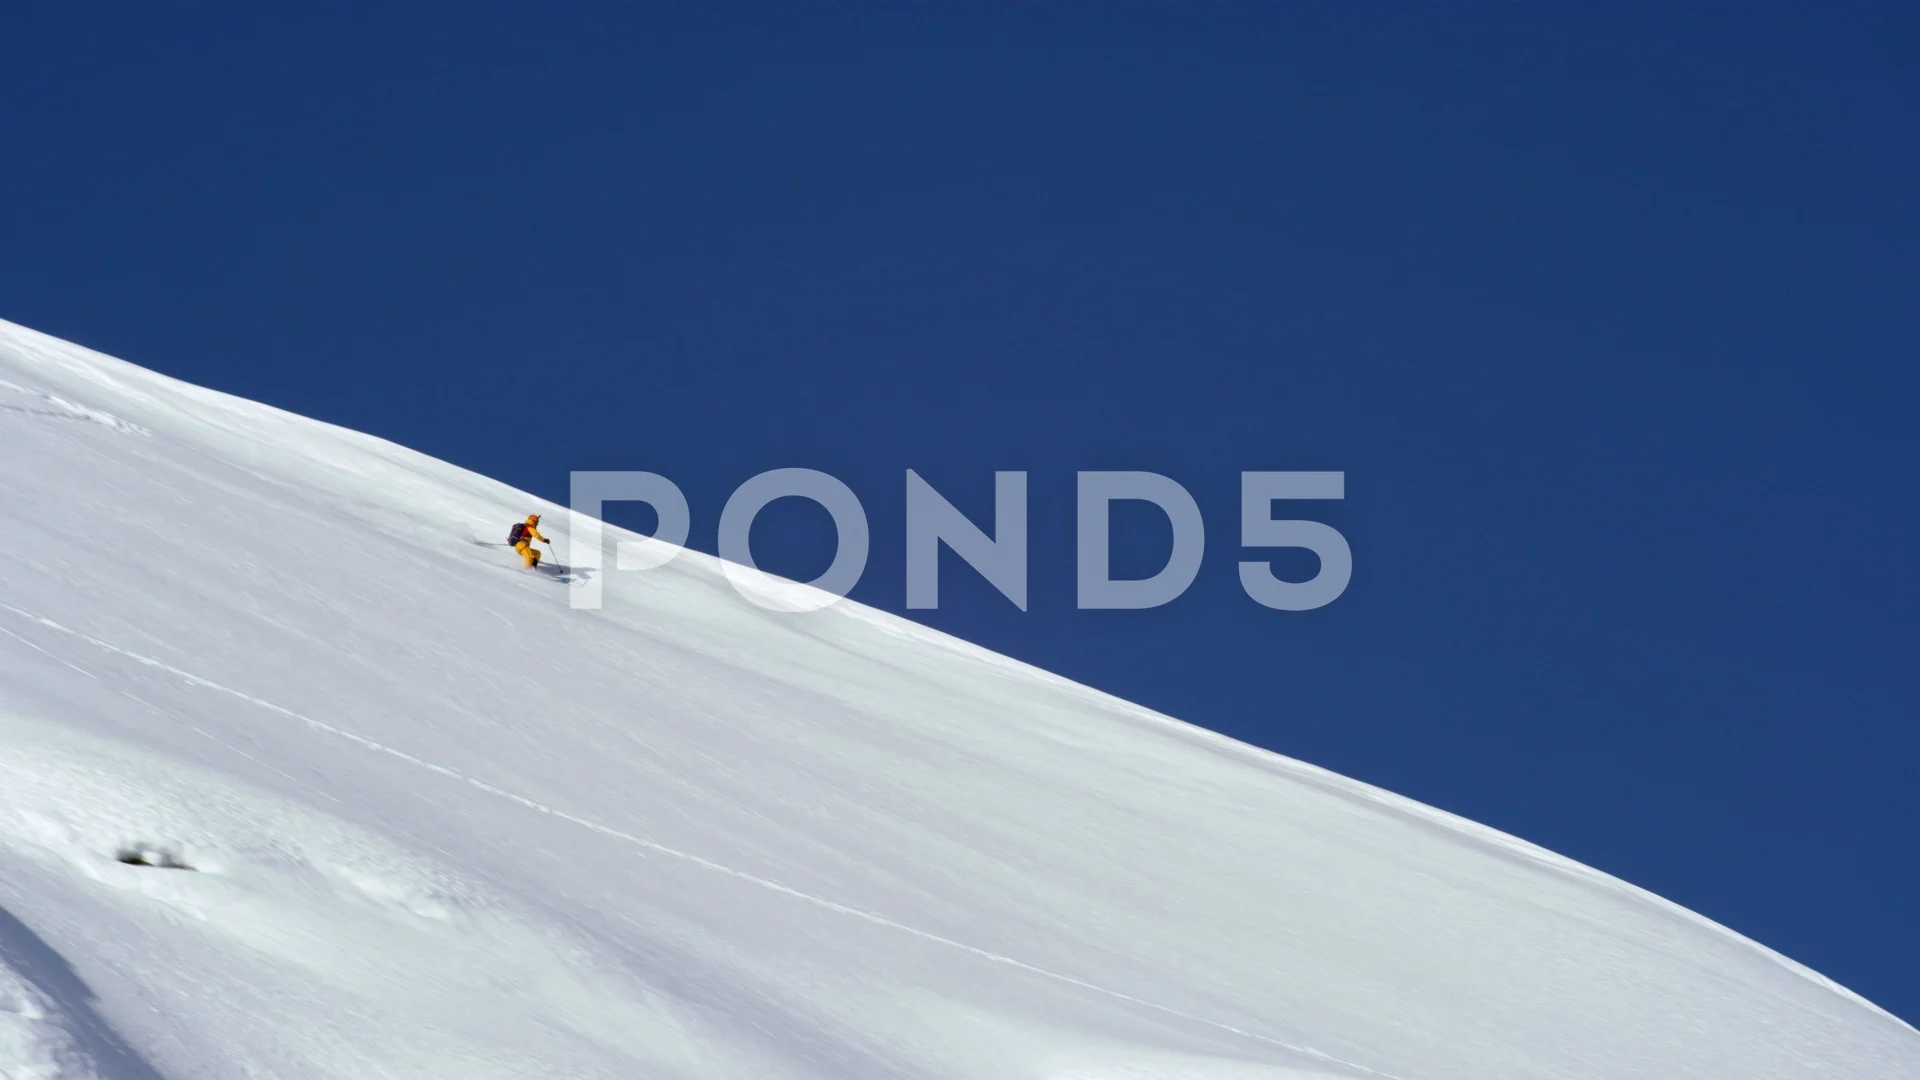 https://images.pond5.com/shot-afar-skier-sliding-down-footage-129119881_prevstill.jpeg